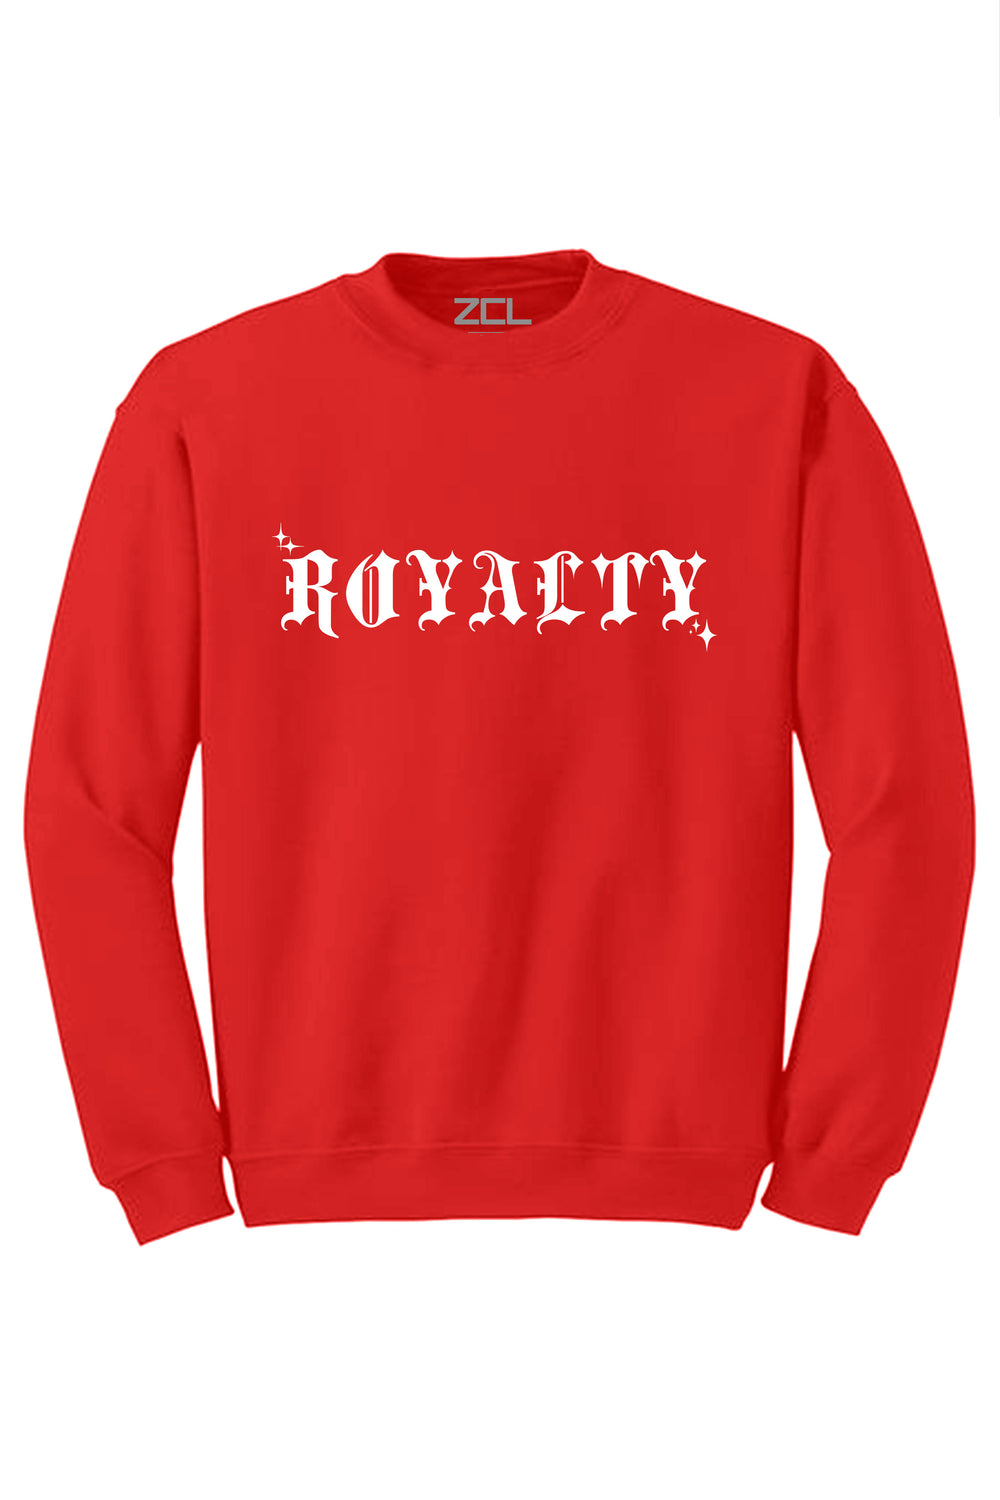 Royalty Crewneck Sweatshirt (White Logo) - Zamage